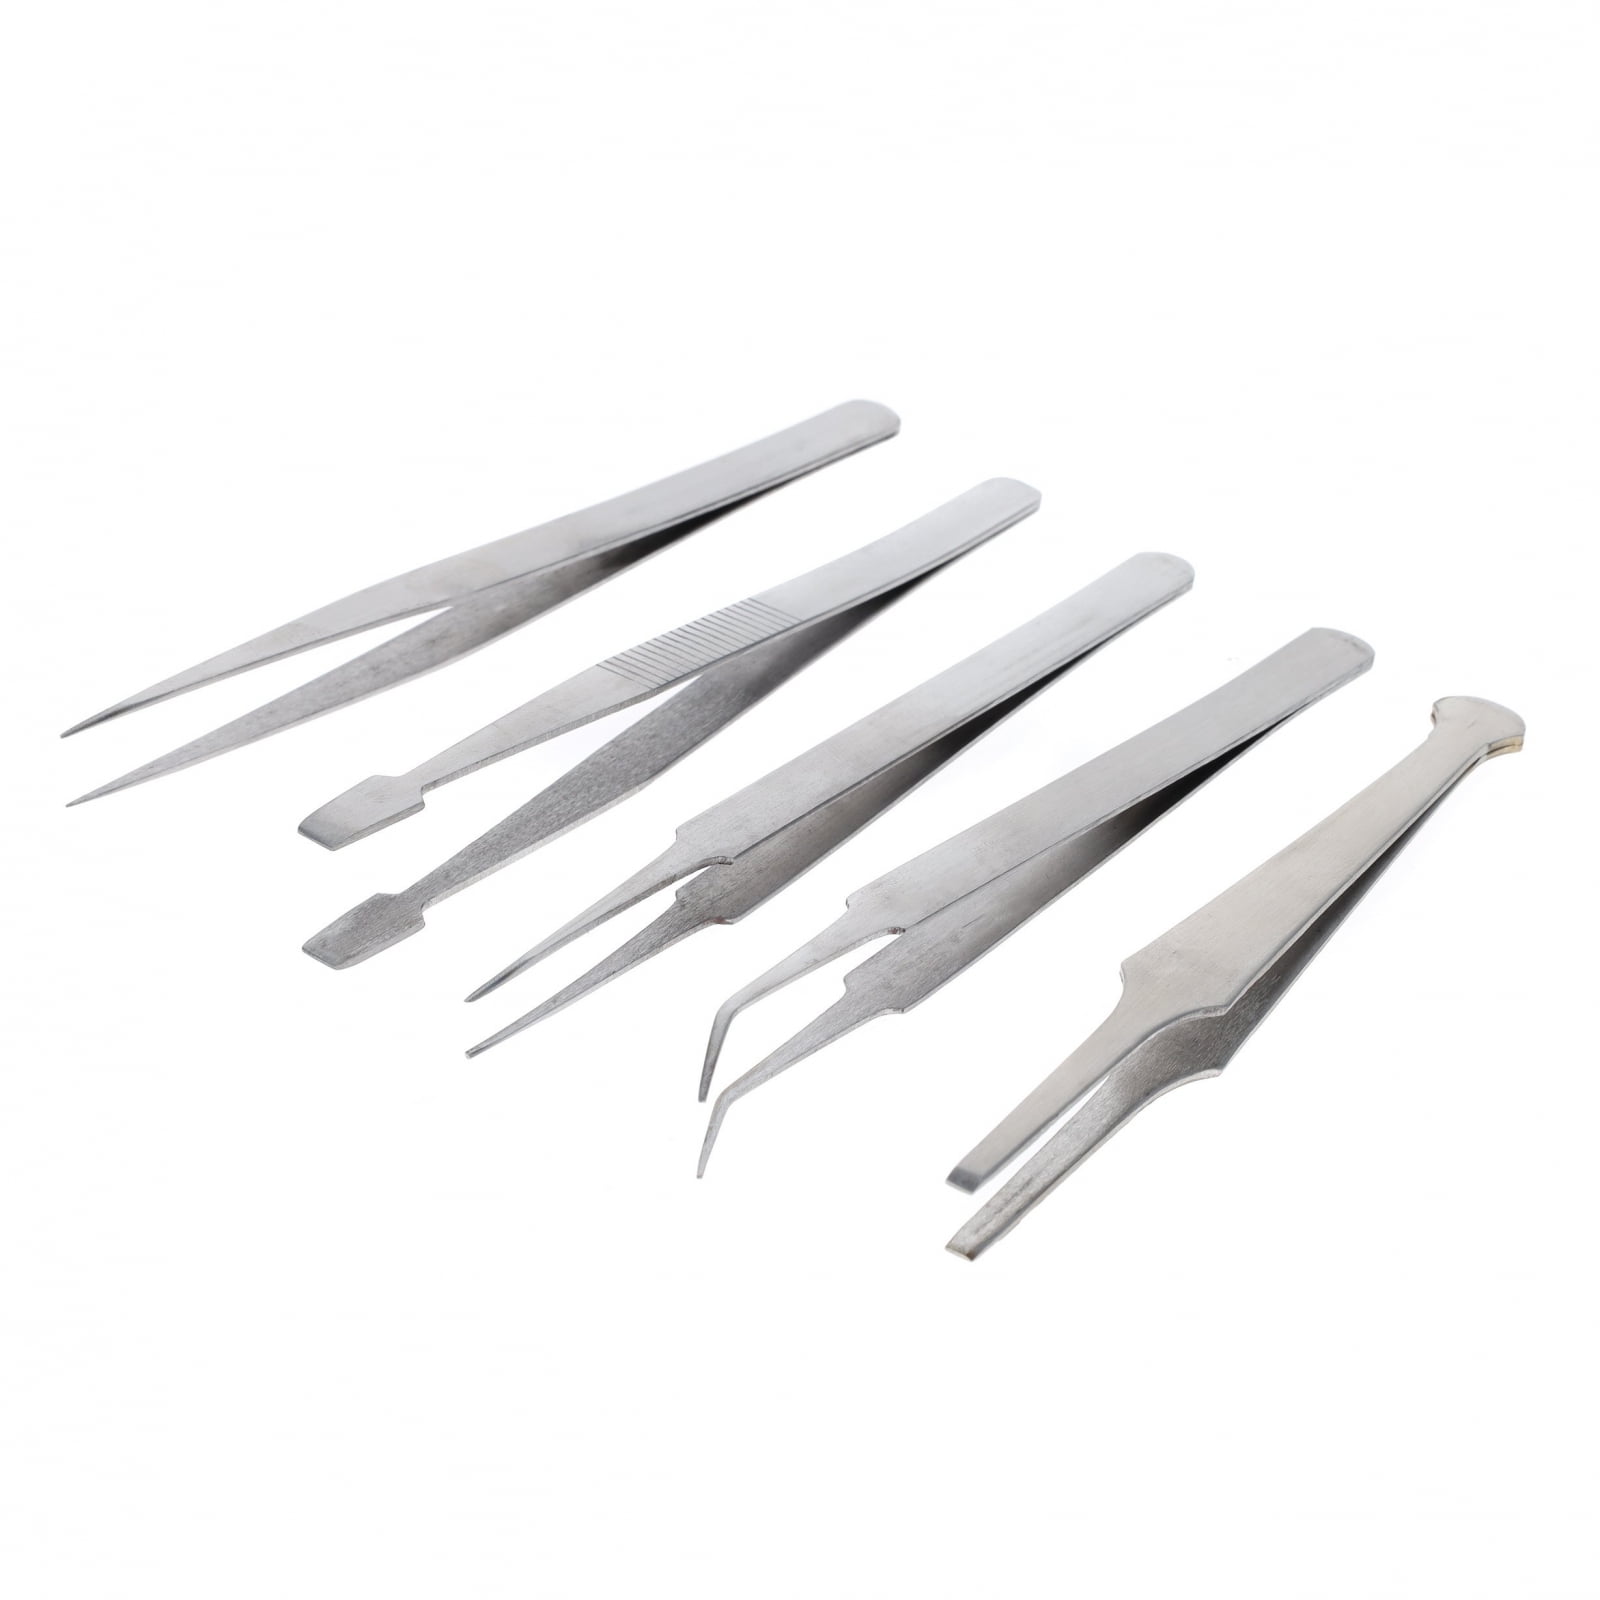 4Pcs Metal Soldering Craft Straight Curved Tweezers With Fine Precision Tweezer 